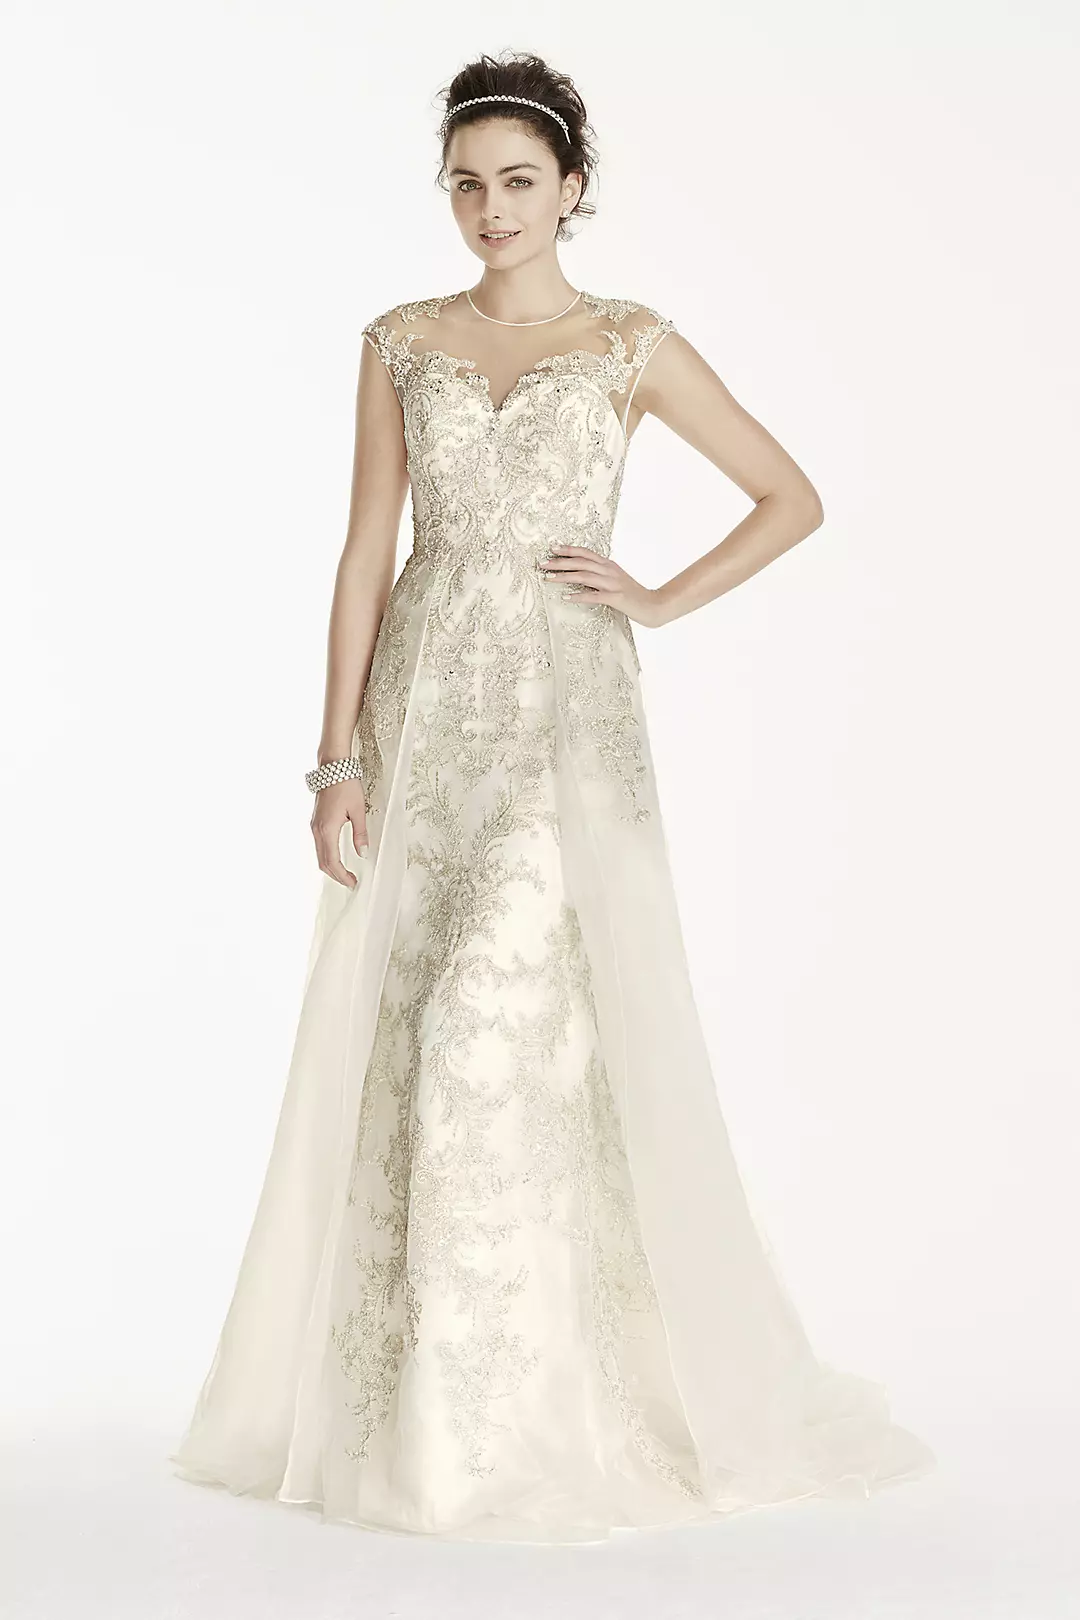 Oleg Cassini Beaded Lace with Tulle Wedding Dress Image